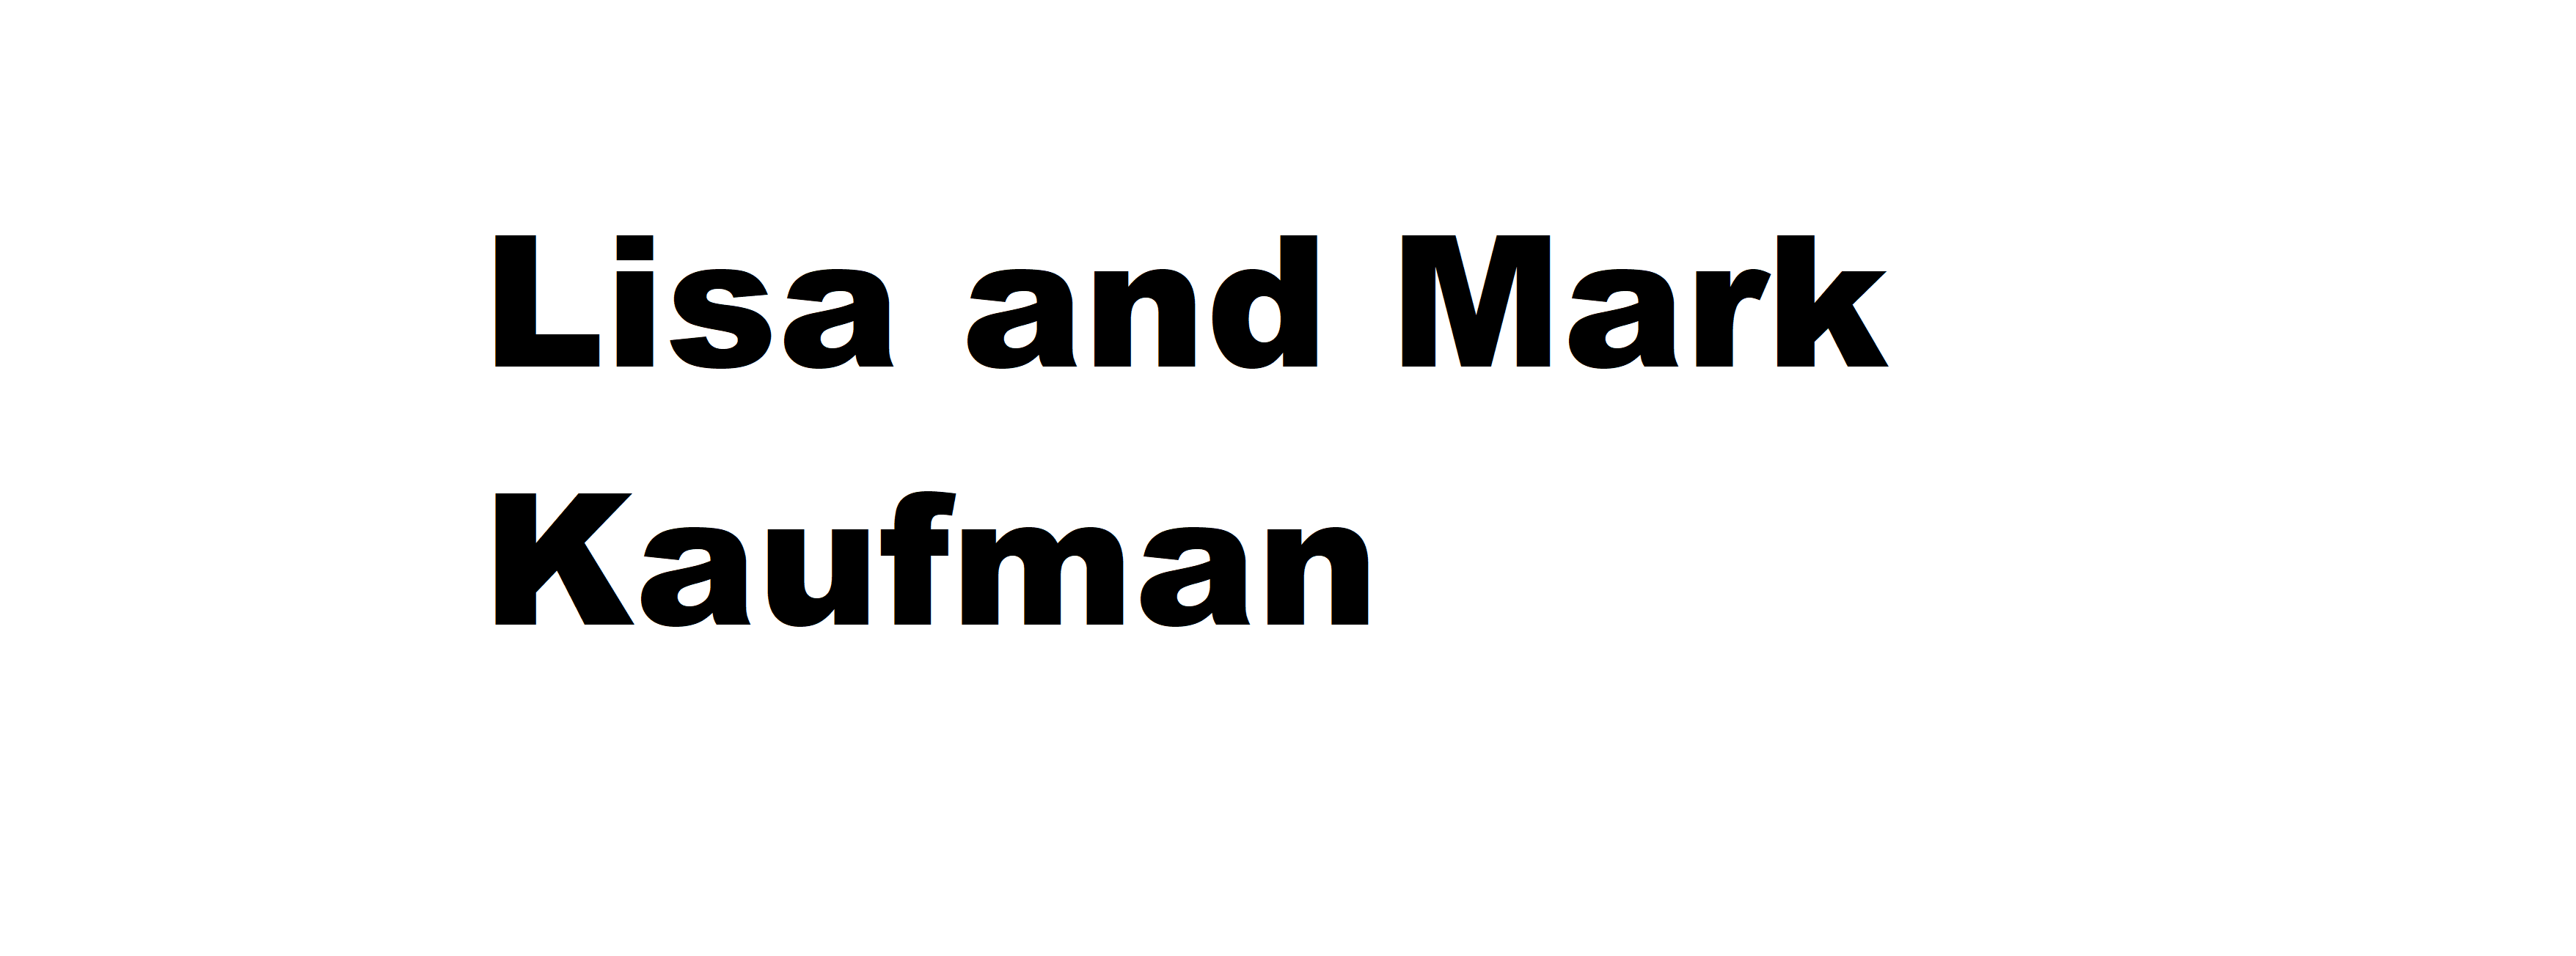 Lisa and Mark Kaufman